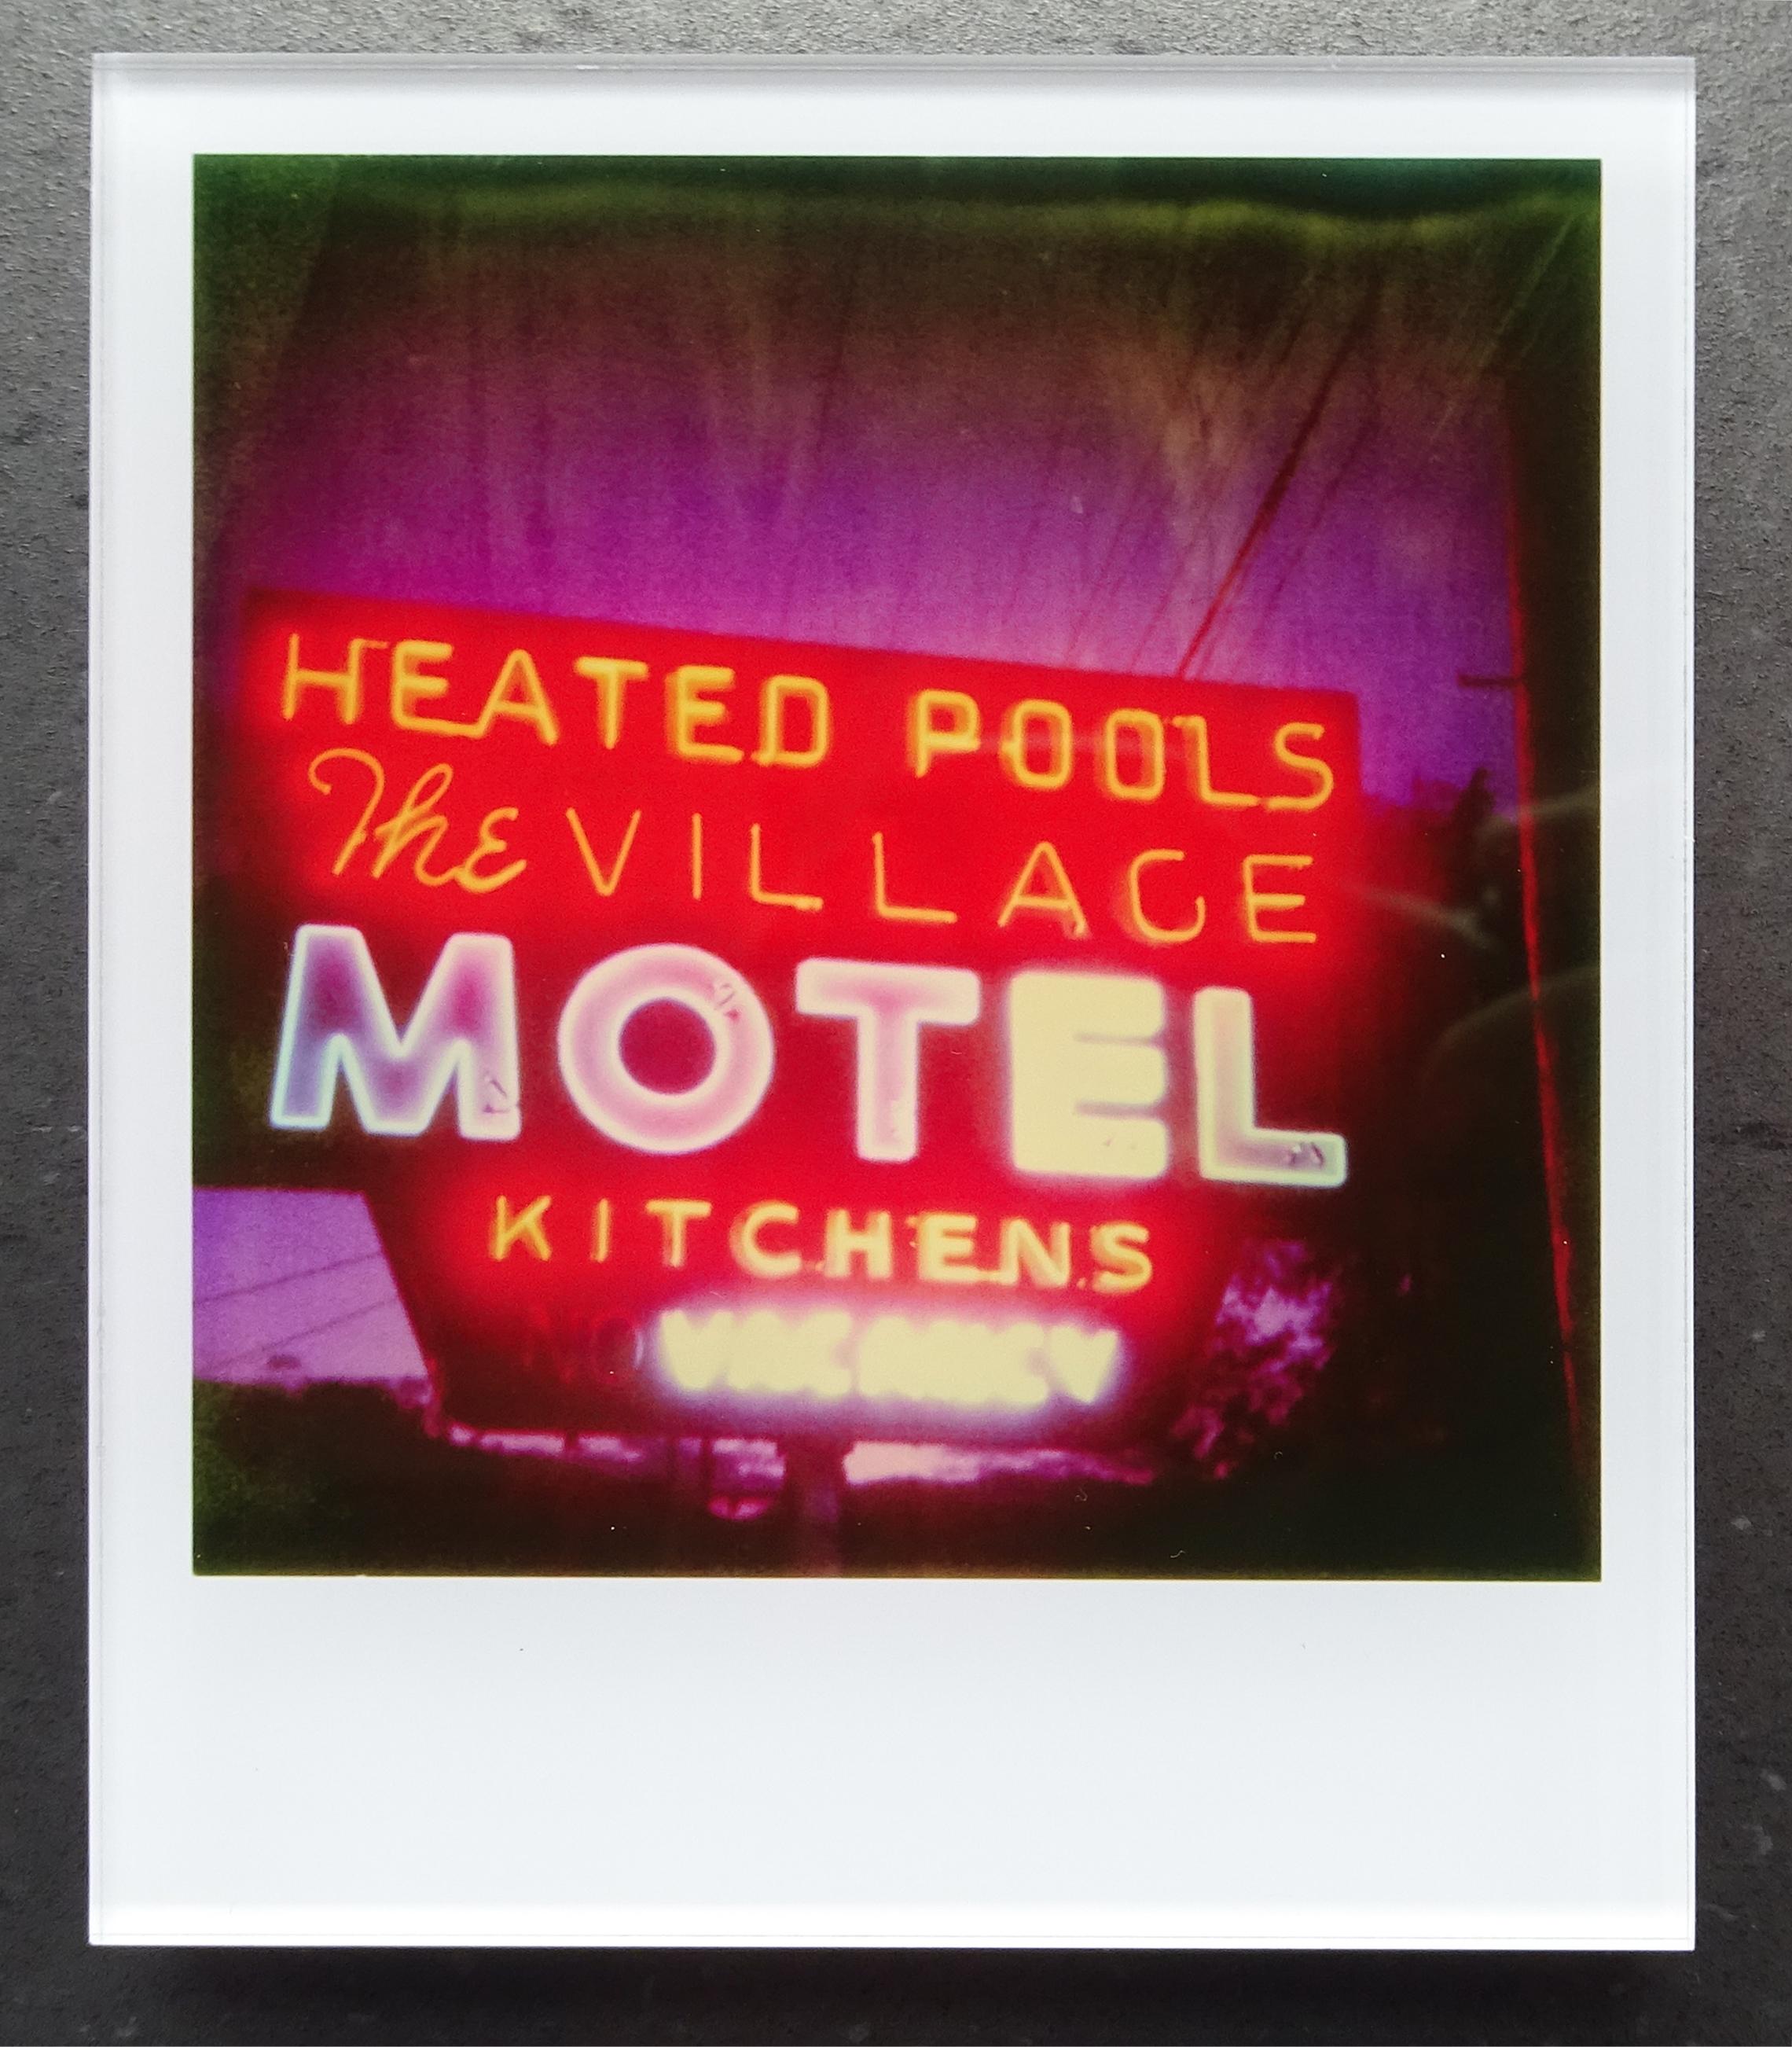 Die Minis von Stefanie Schneider
Village Motel Beheizter Pool (The last Picture Show), 2009

Verso signiert und Signaturmarke.
Digitale Lambda-Farbfotografien auf der Grundlage eines Polaroids.
Eingeklemmt zwischen Plexiglas (Dicke 0,7 cm)

Offene